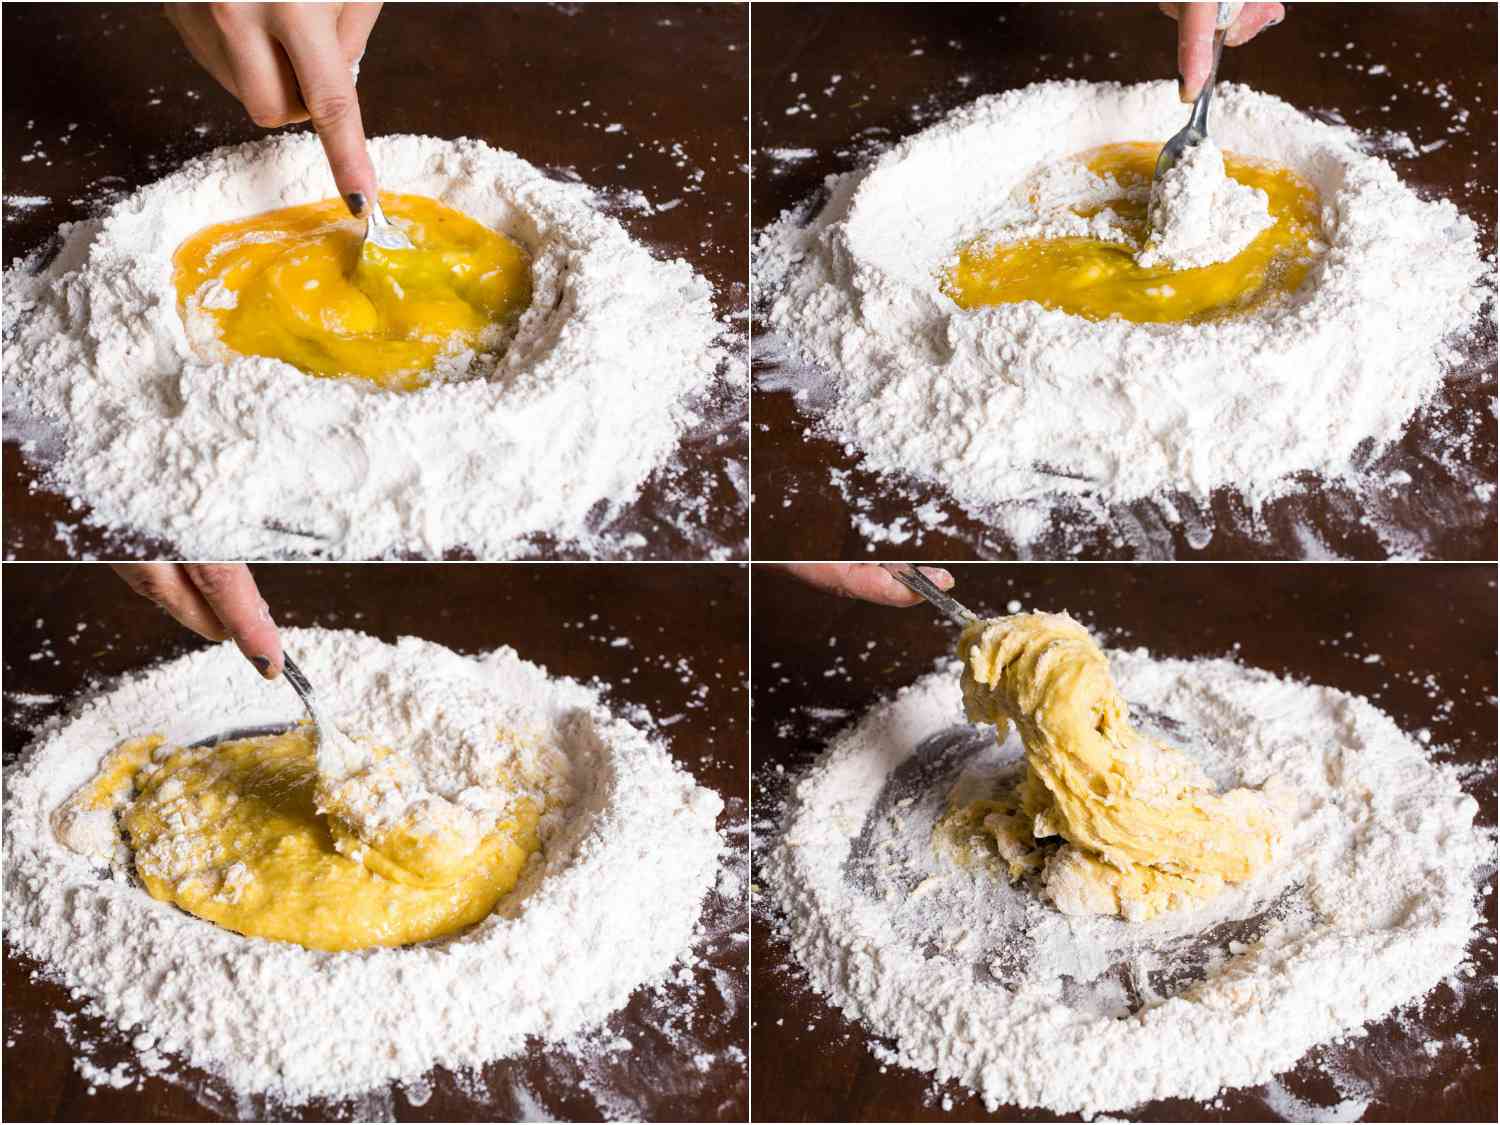 拼贴意大利面制作过程:用叉子搅拌鸡蛋，搅拌面粉到鸡蛋中形成面团